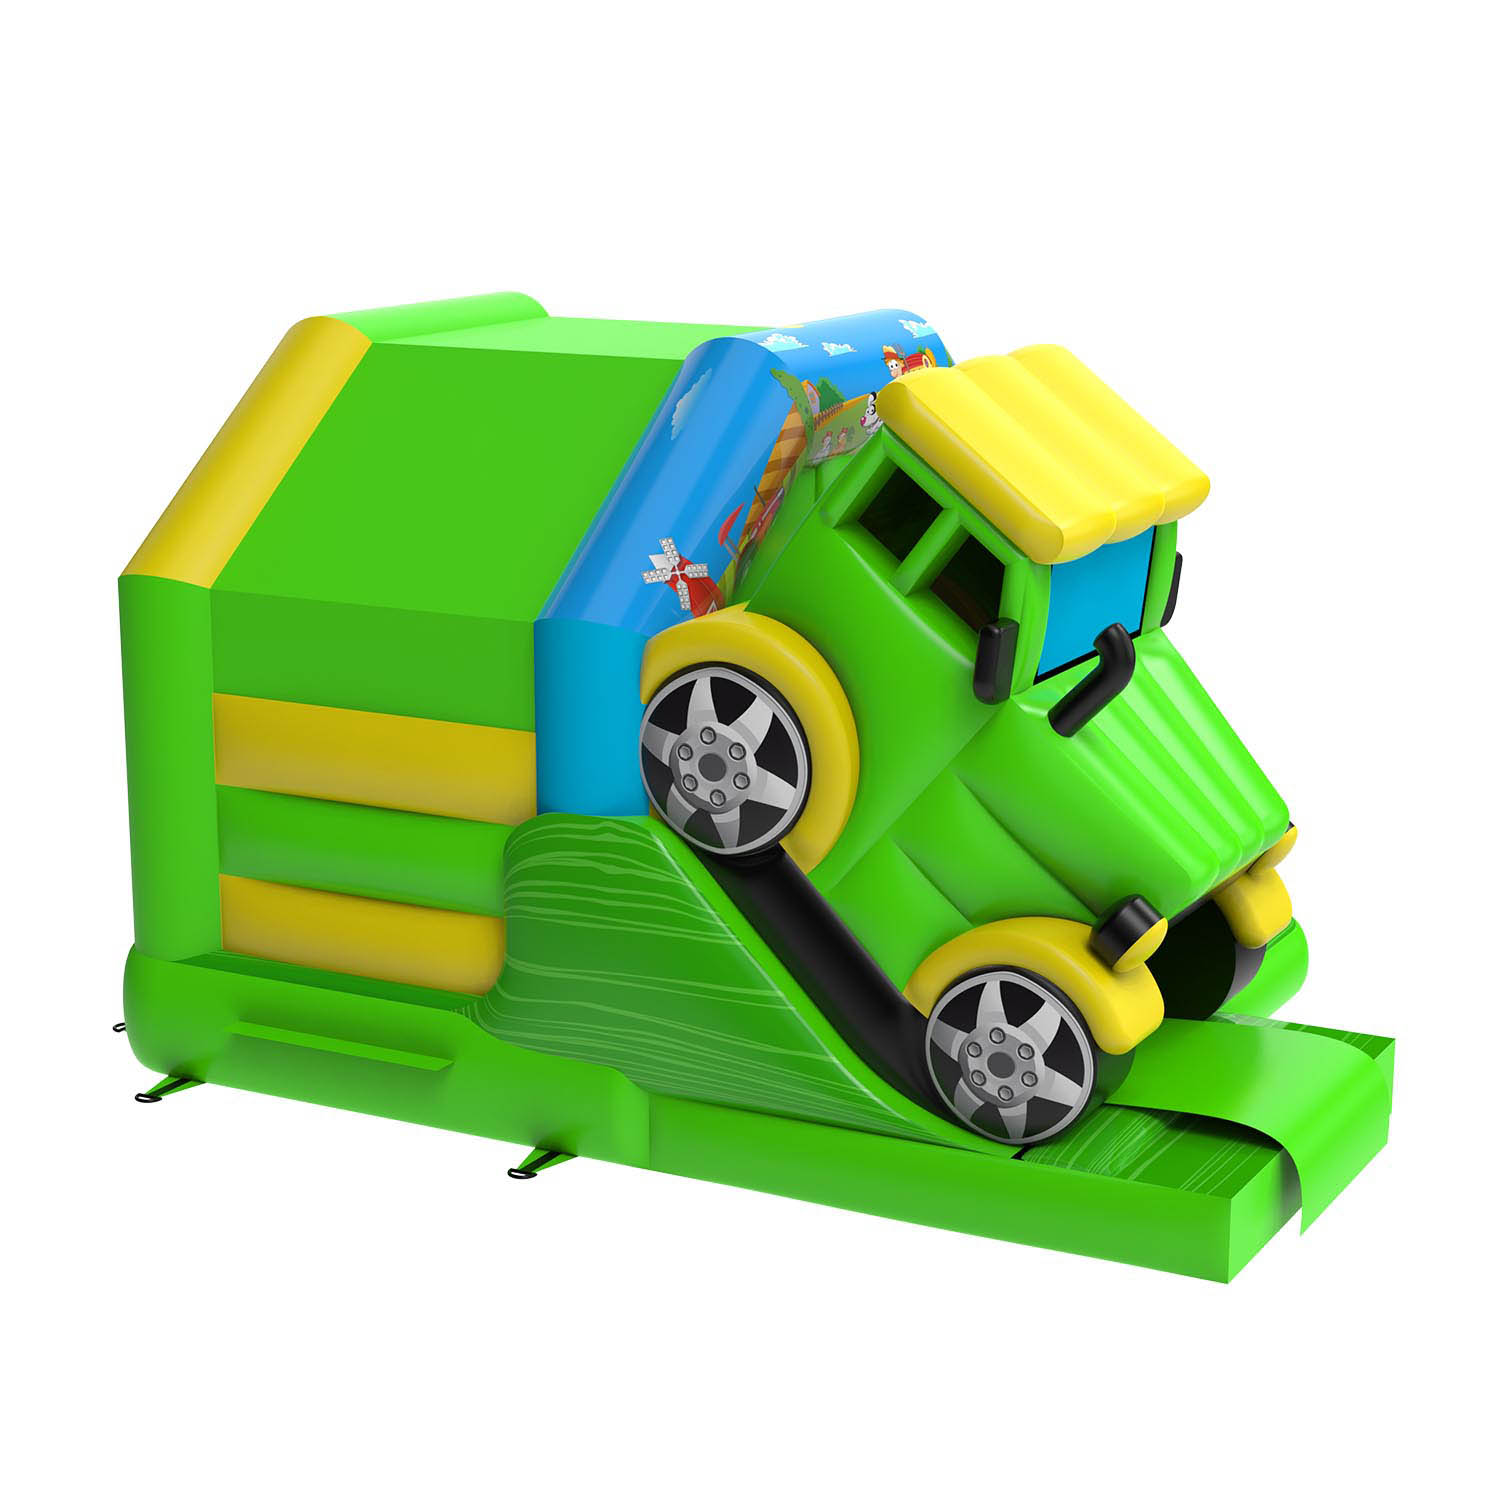 Cartoon Car Inflatable Bounce HouseYG-161